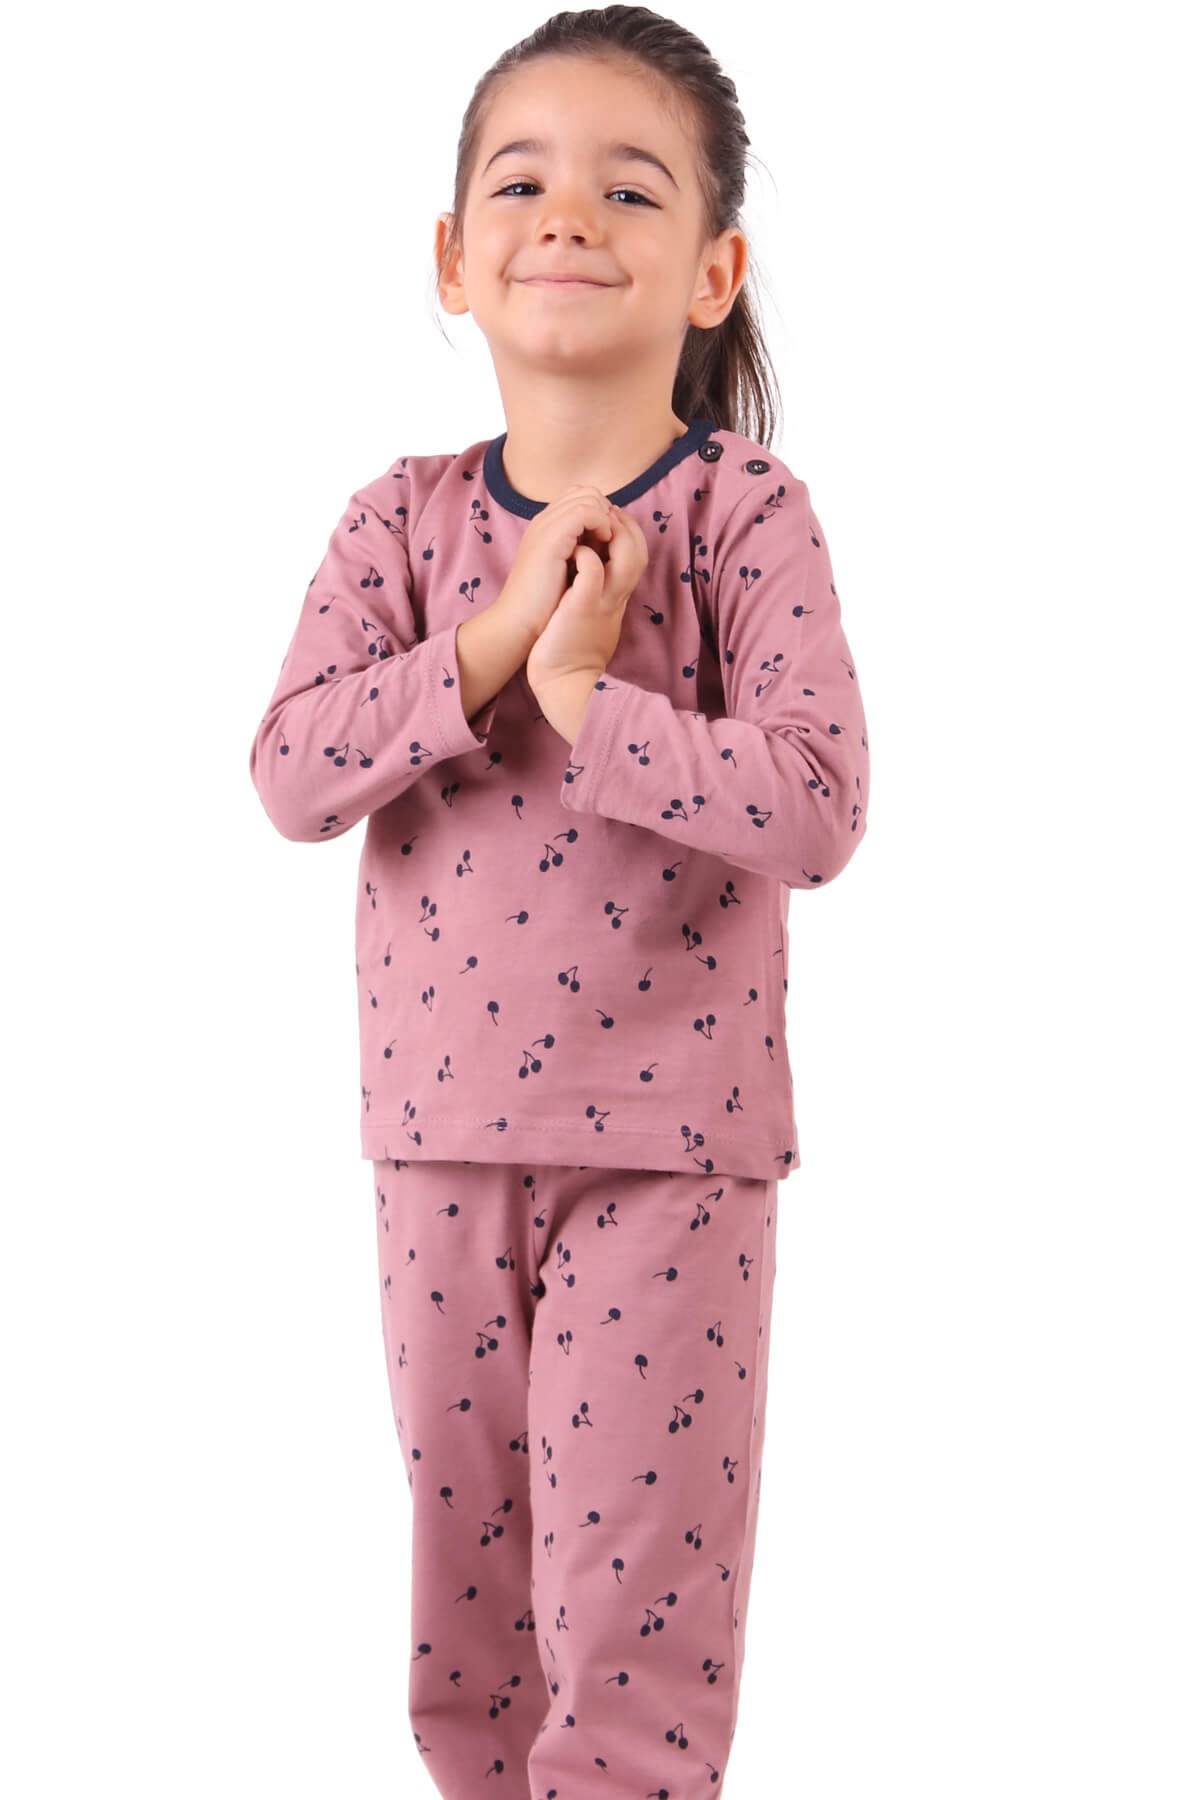 Kız Çocuk Pijama Takımı - Kiraz Desenli Gülkurusu 1-4 Yaş